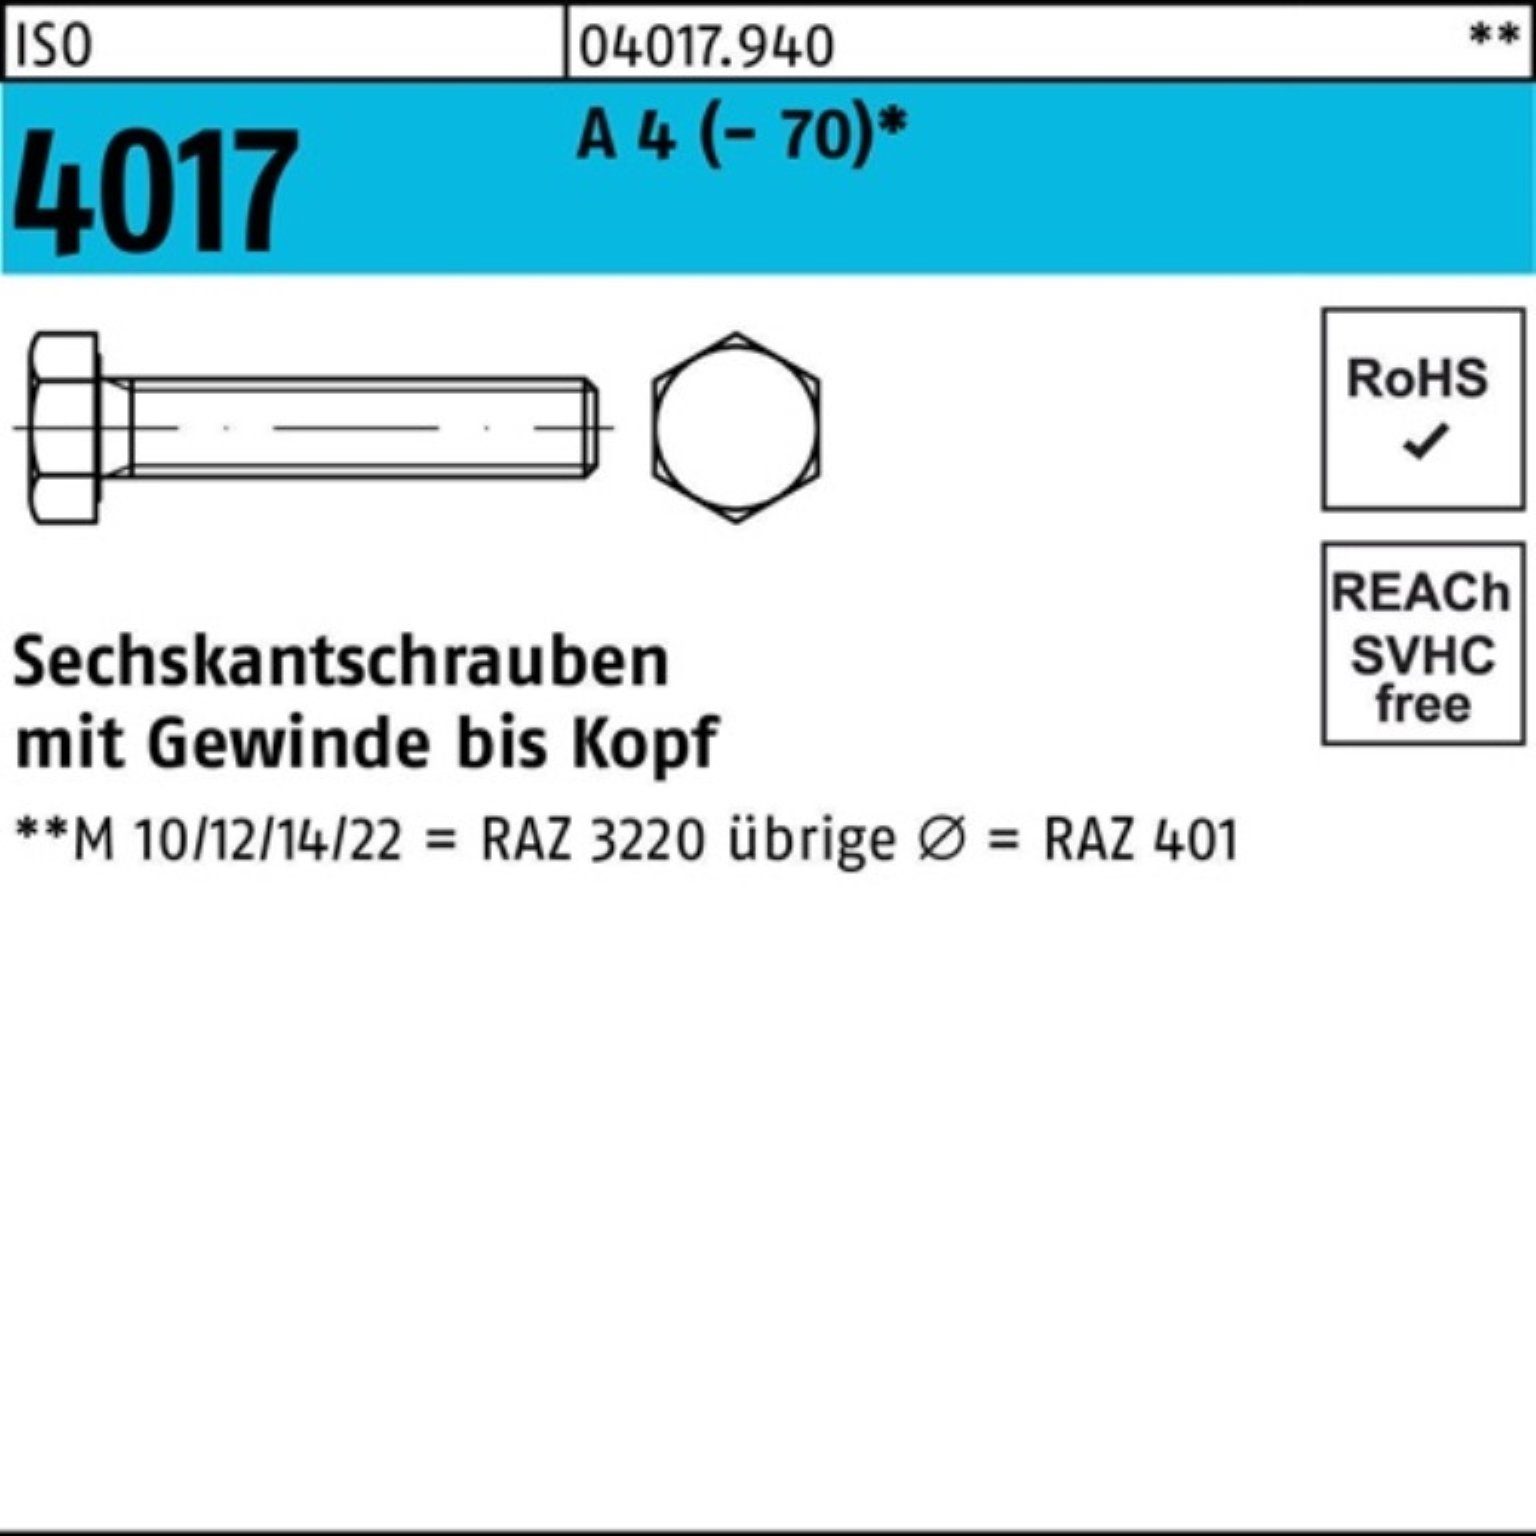 A Sechskantschraube I Sechskantschraube M8x Stück ISO Pack VG 1 Bufab 100er 4017 4 (70) 200